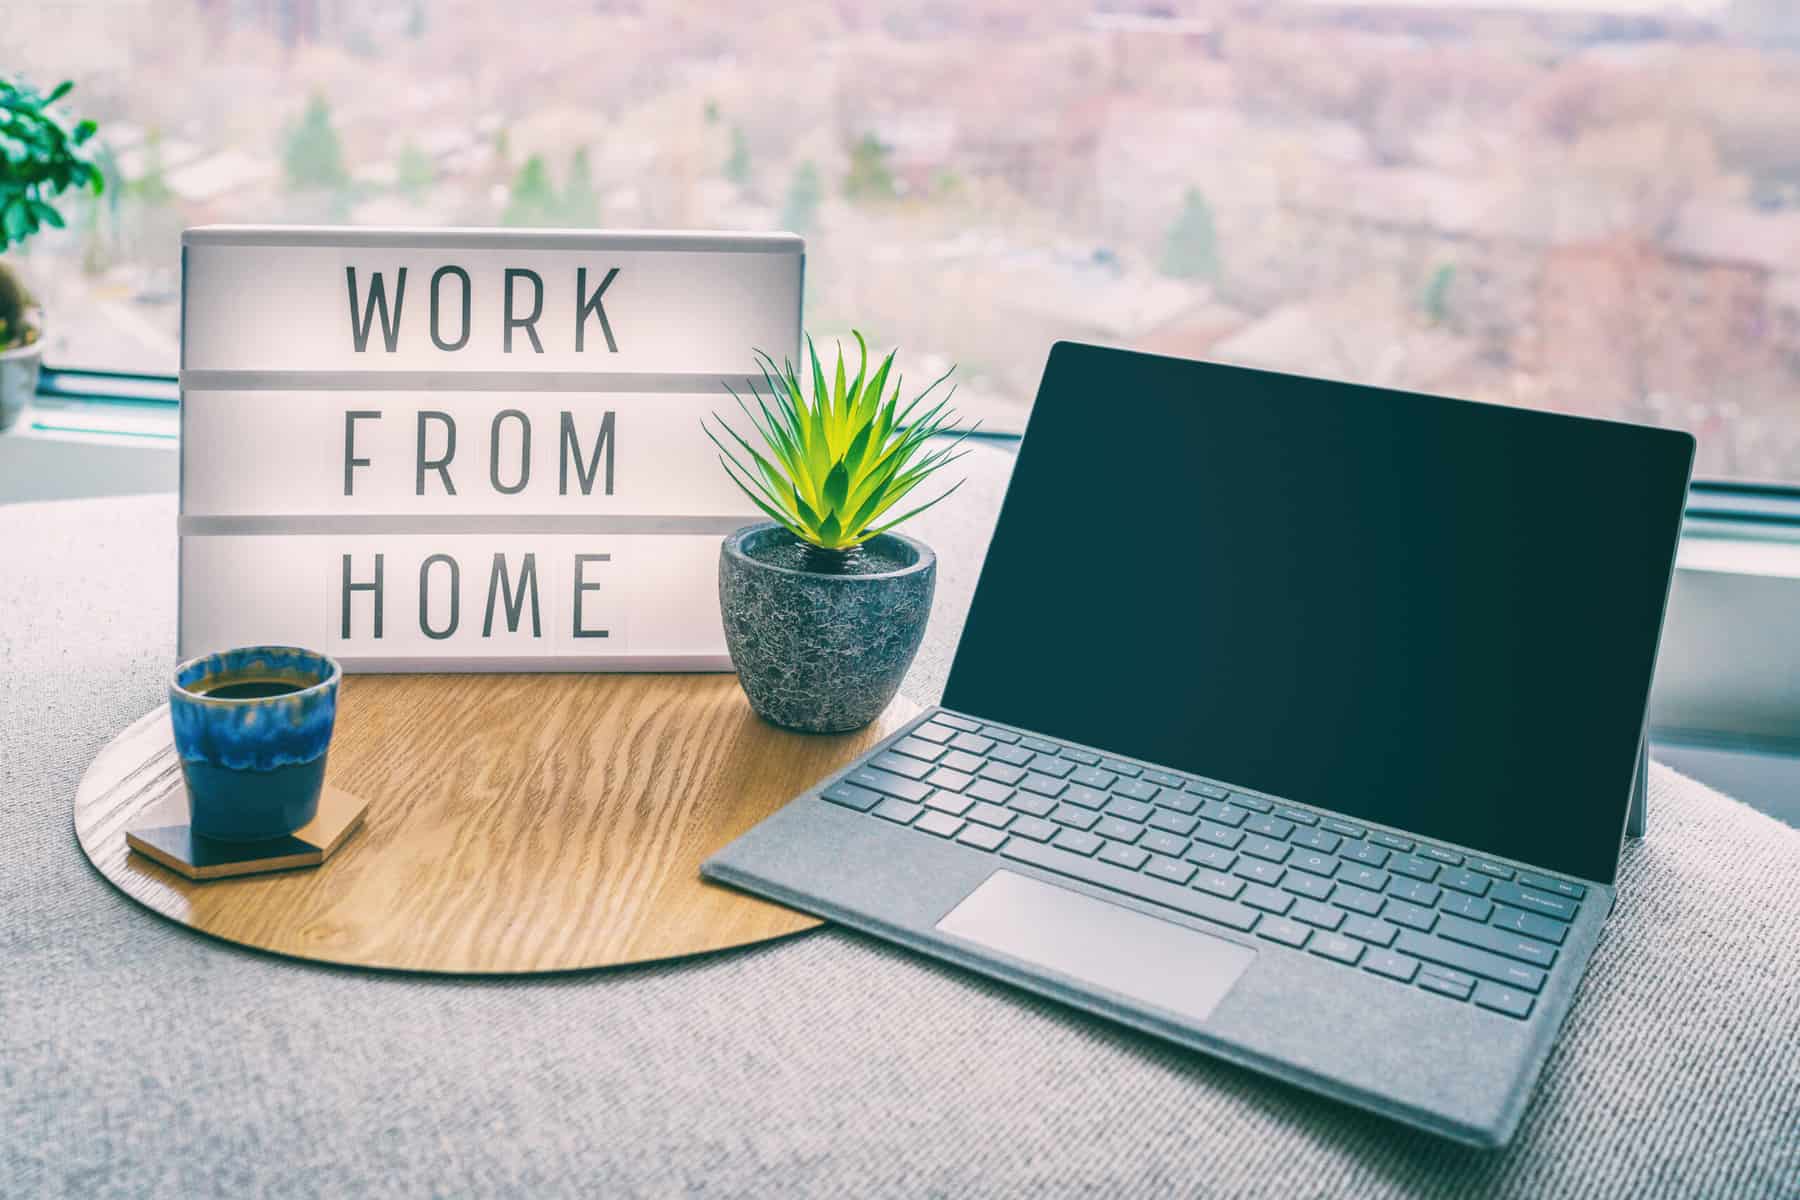 Laptop mit Leuchttafel daneben mit der Aufschrift "Work from Home"